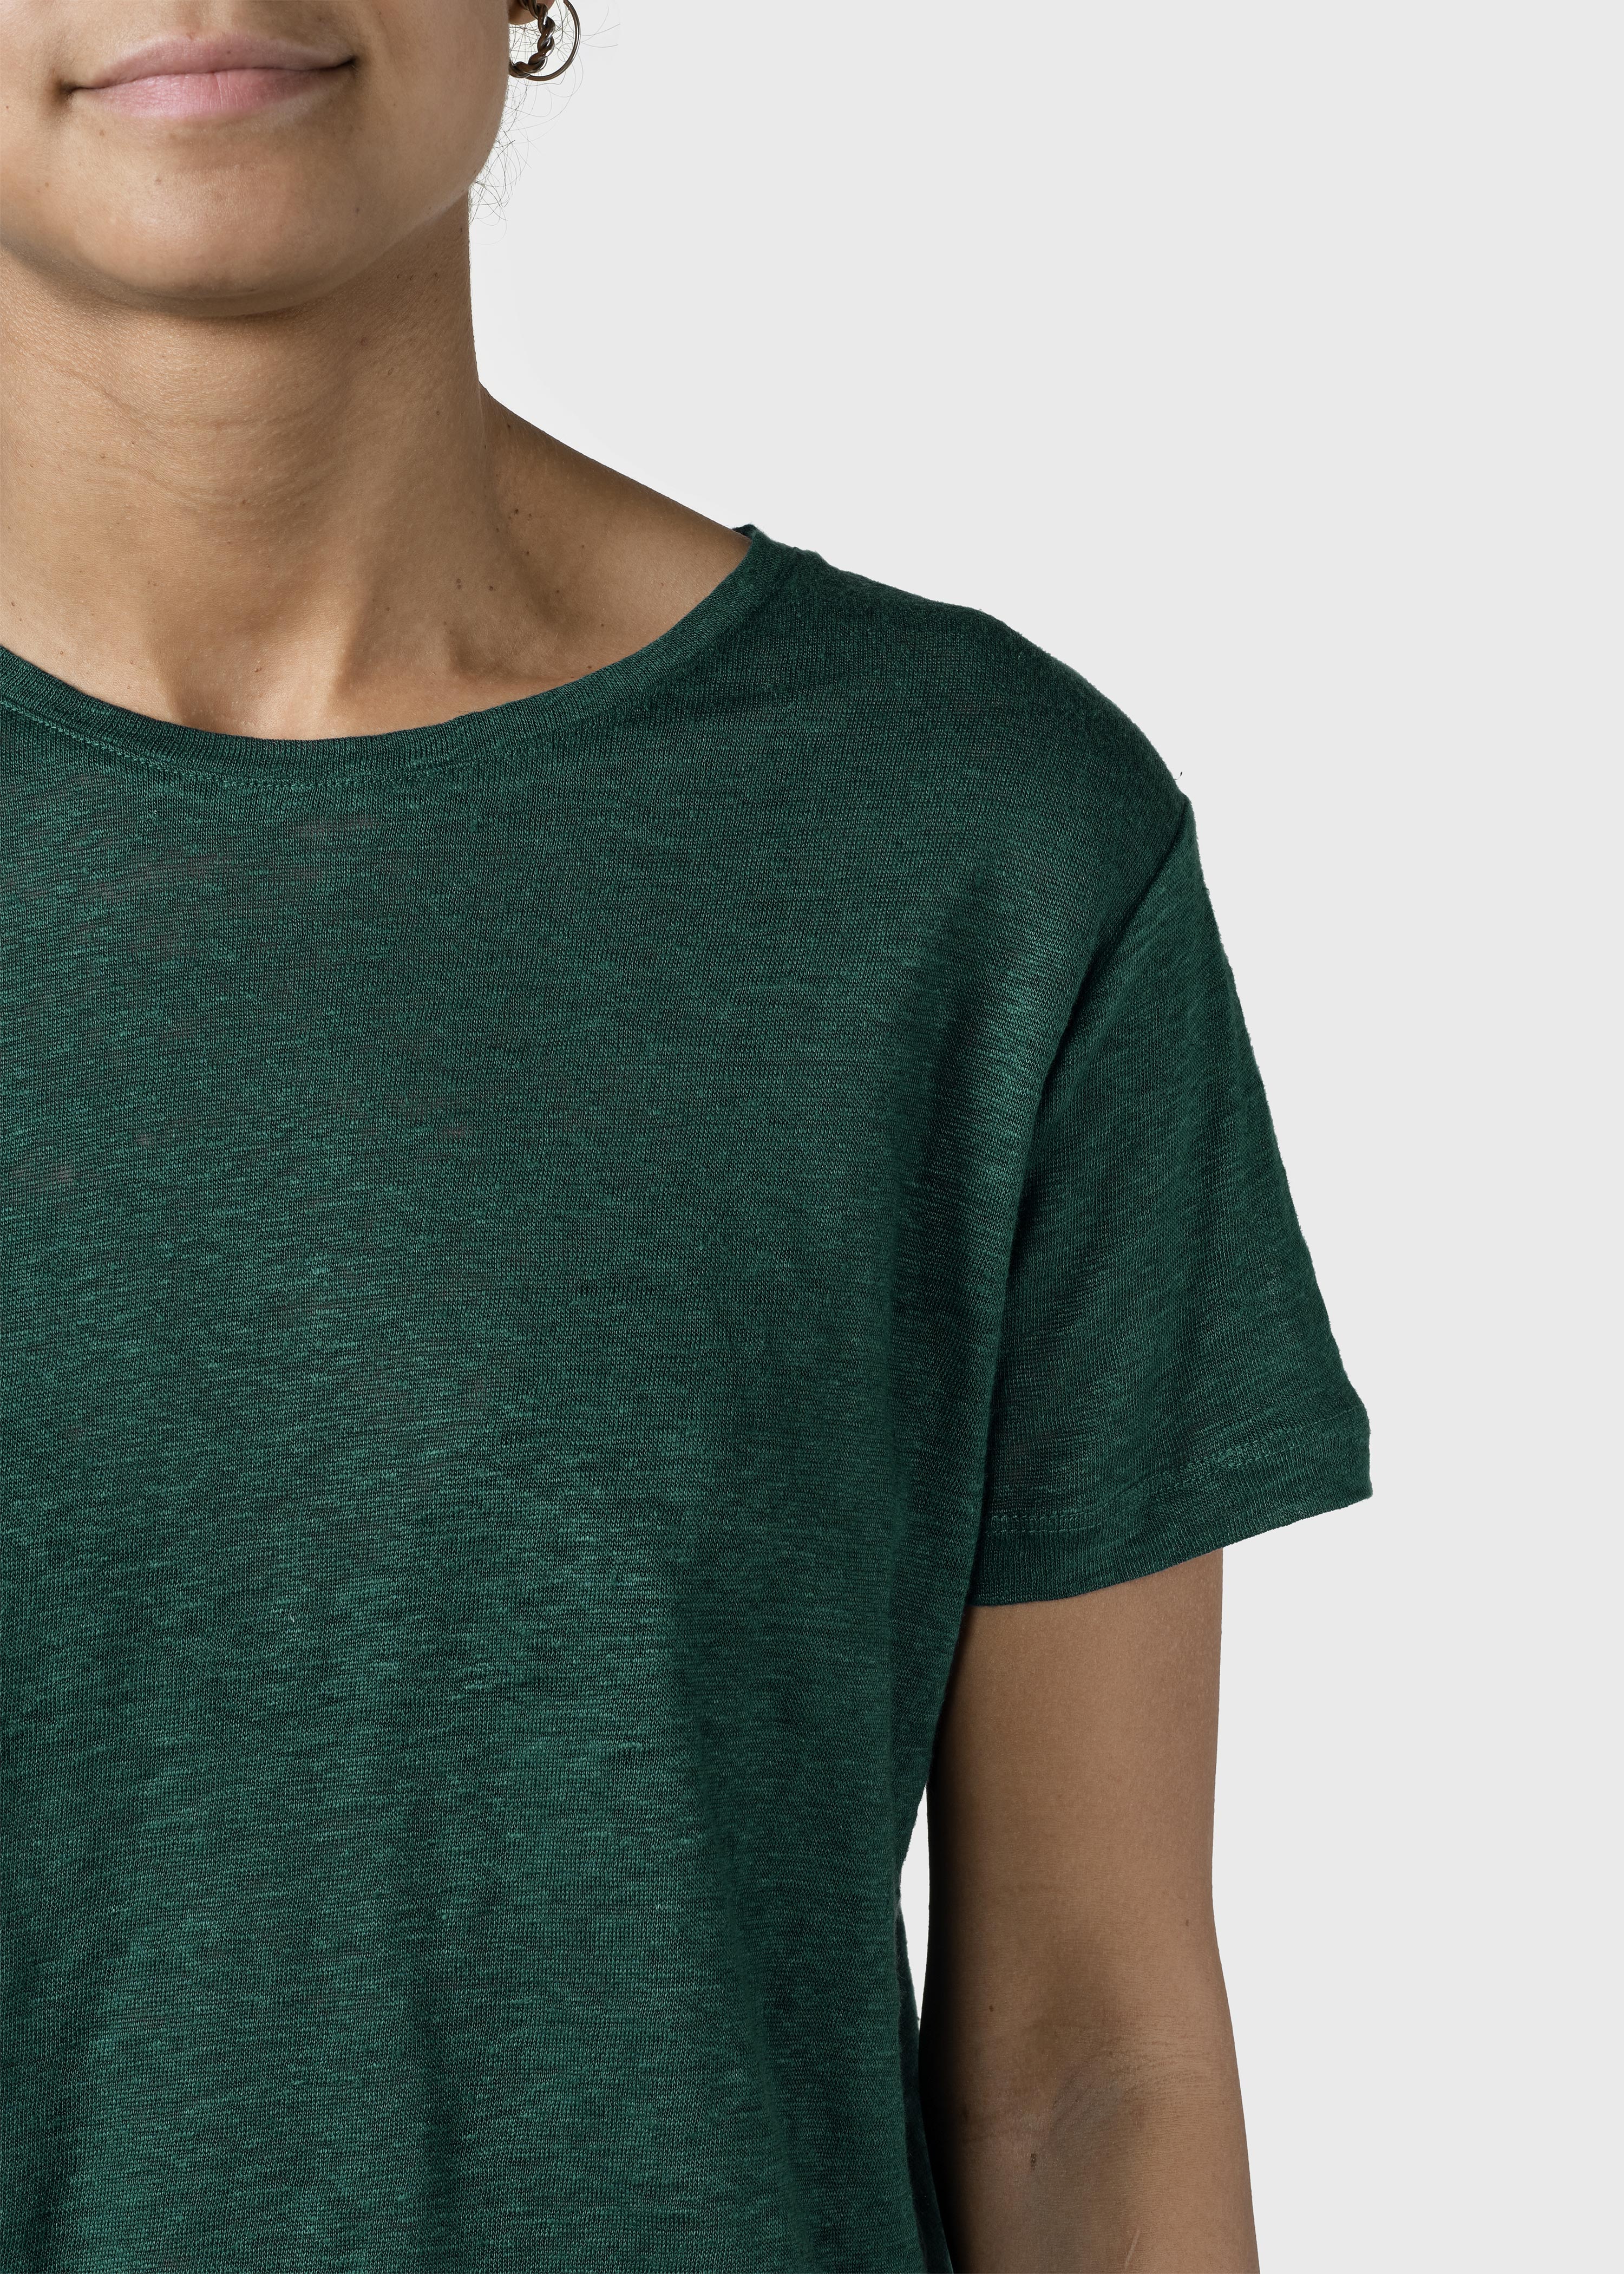 T-Shirt Rikke Moss Green aus Leinen